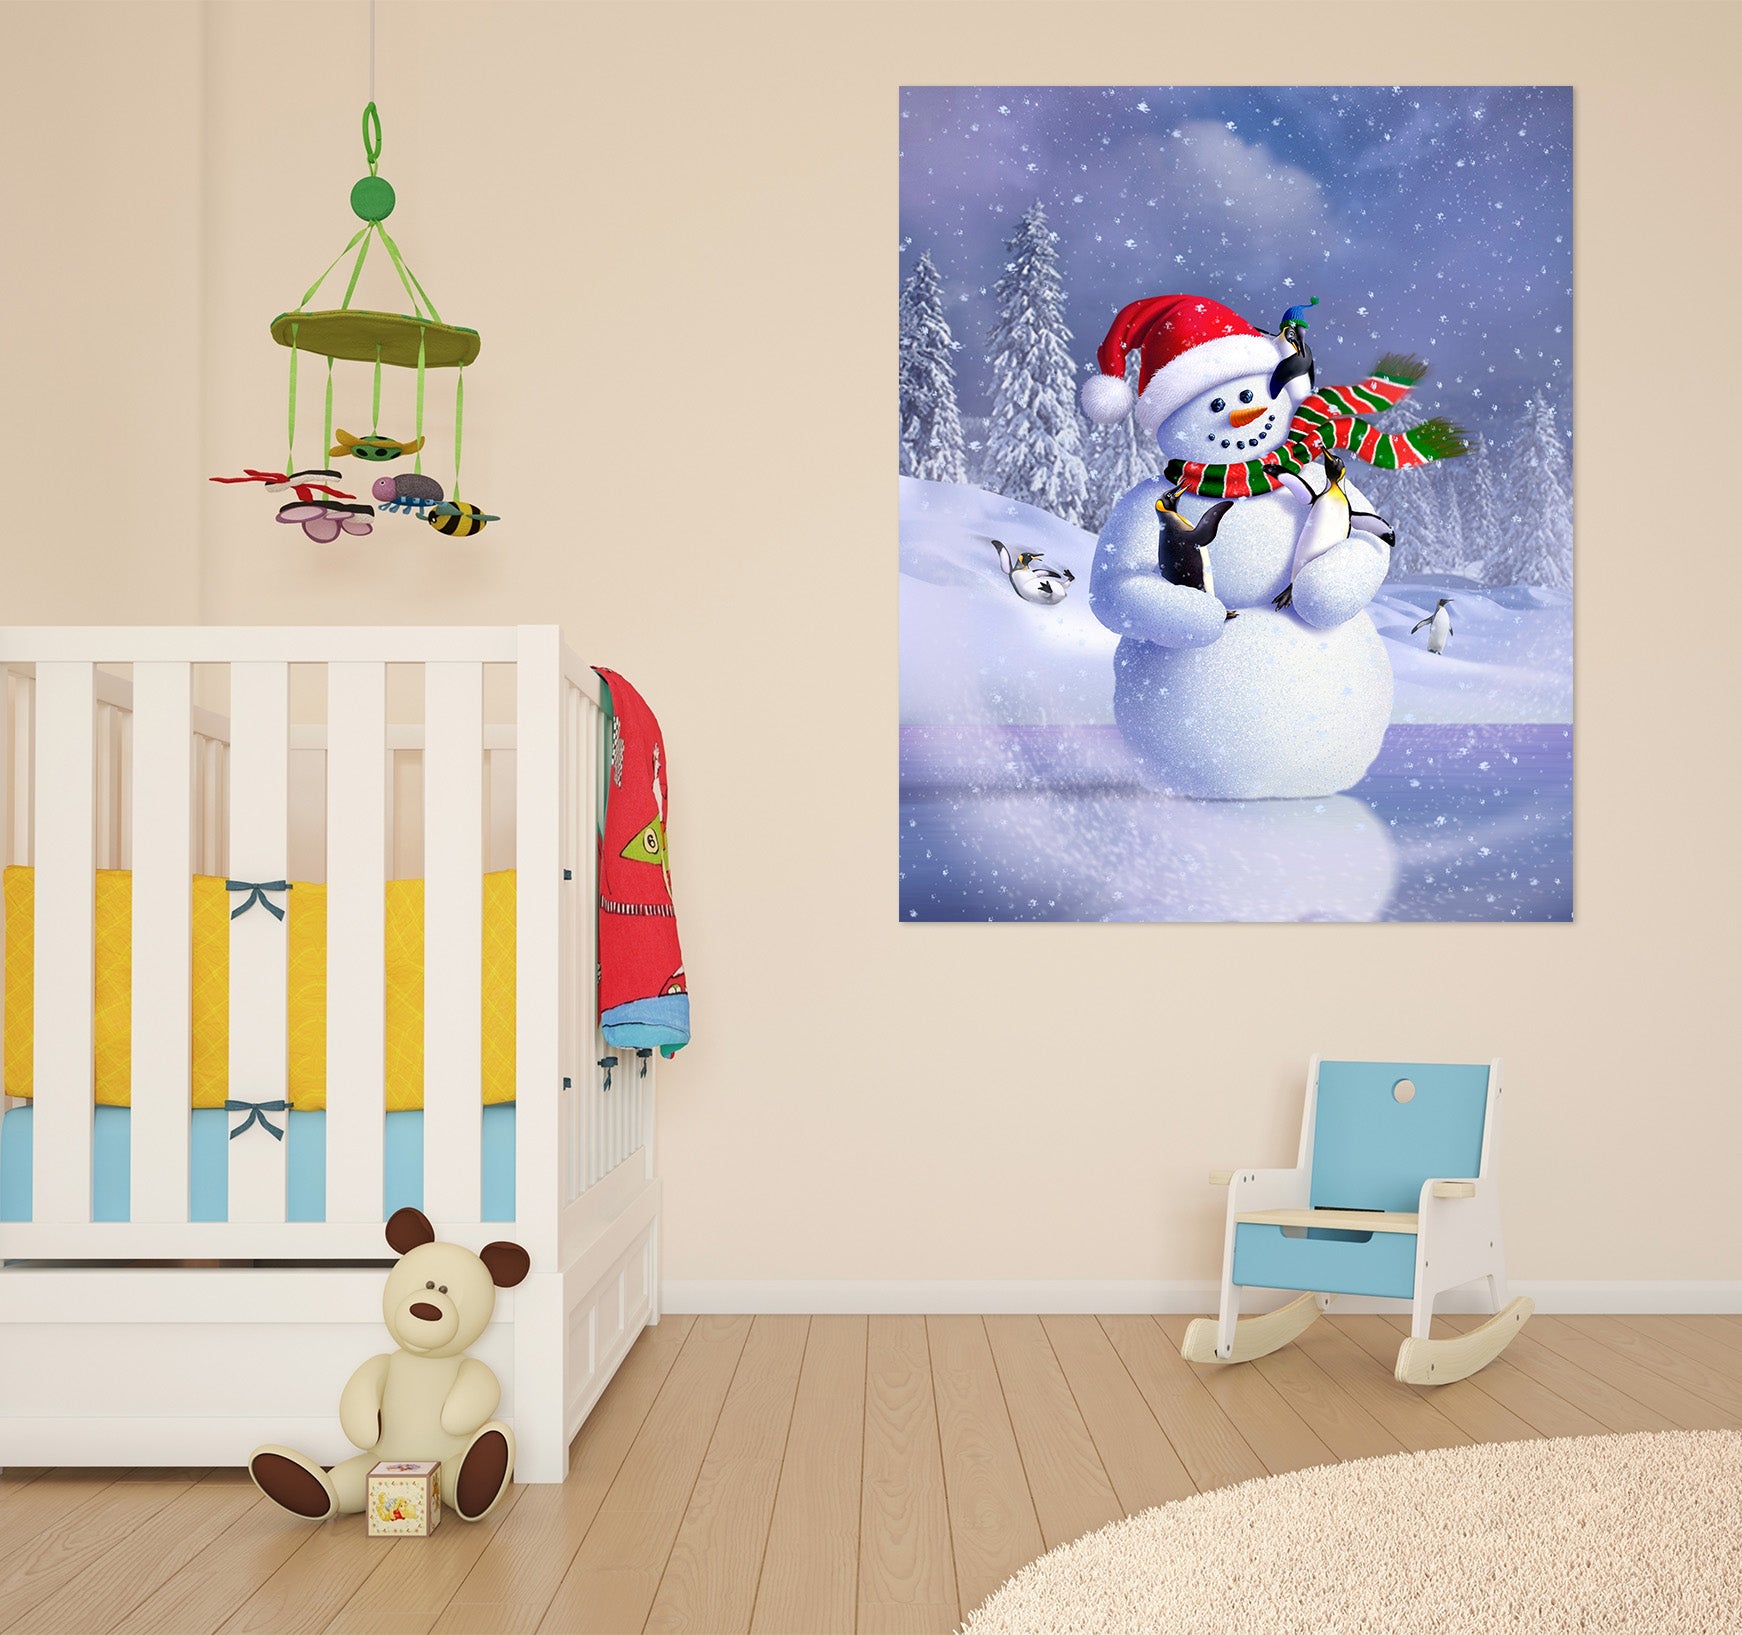 3D Snowman 85205 Jerry LoFaro Wall Sticker